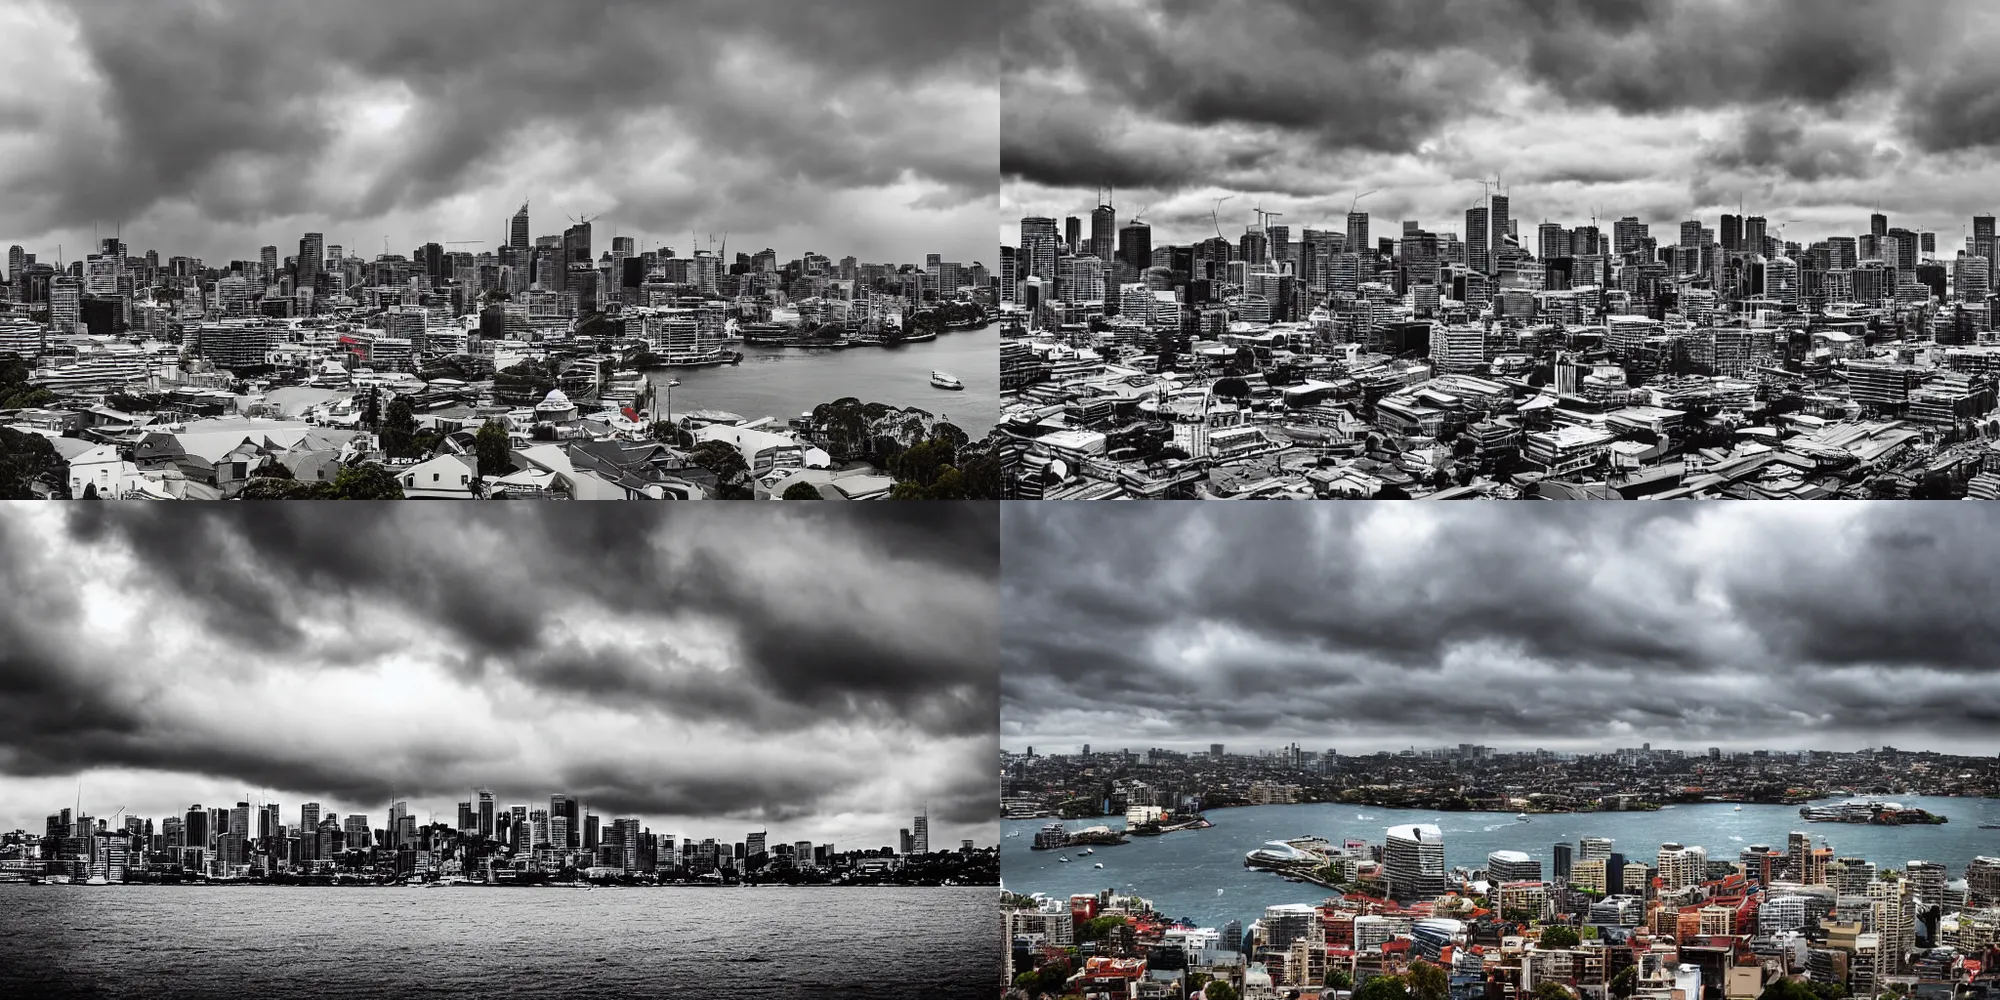 Prompt: landscape photo, stormy overcast rain, city skylines, Sydney